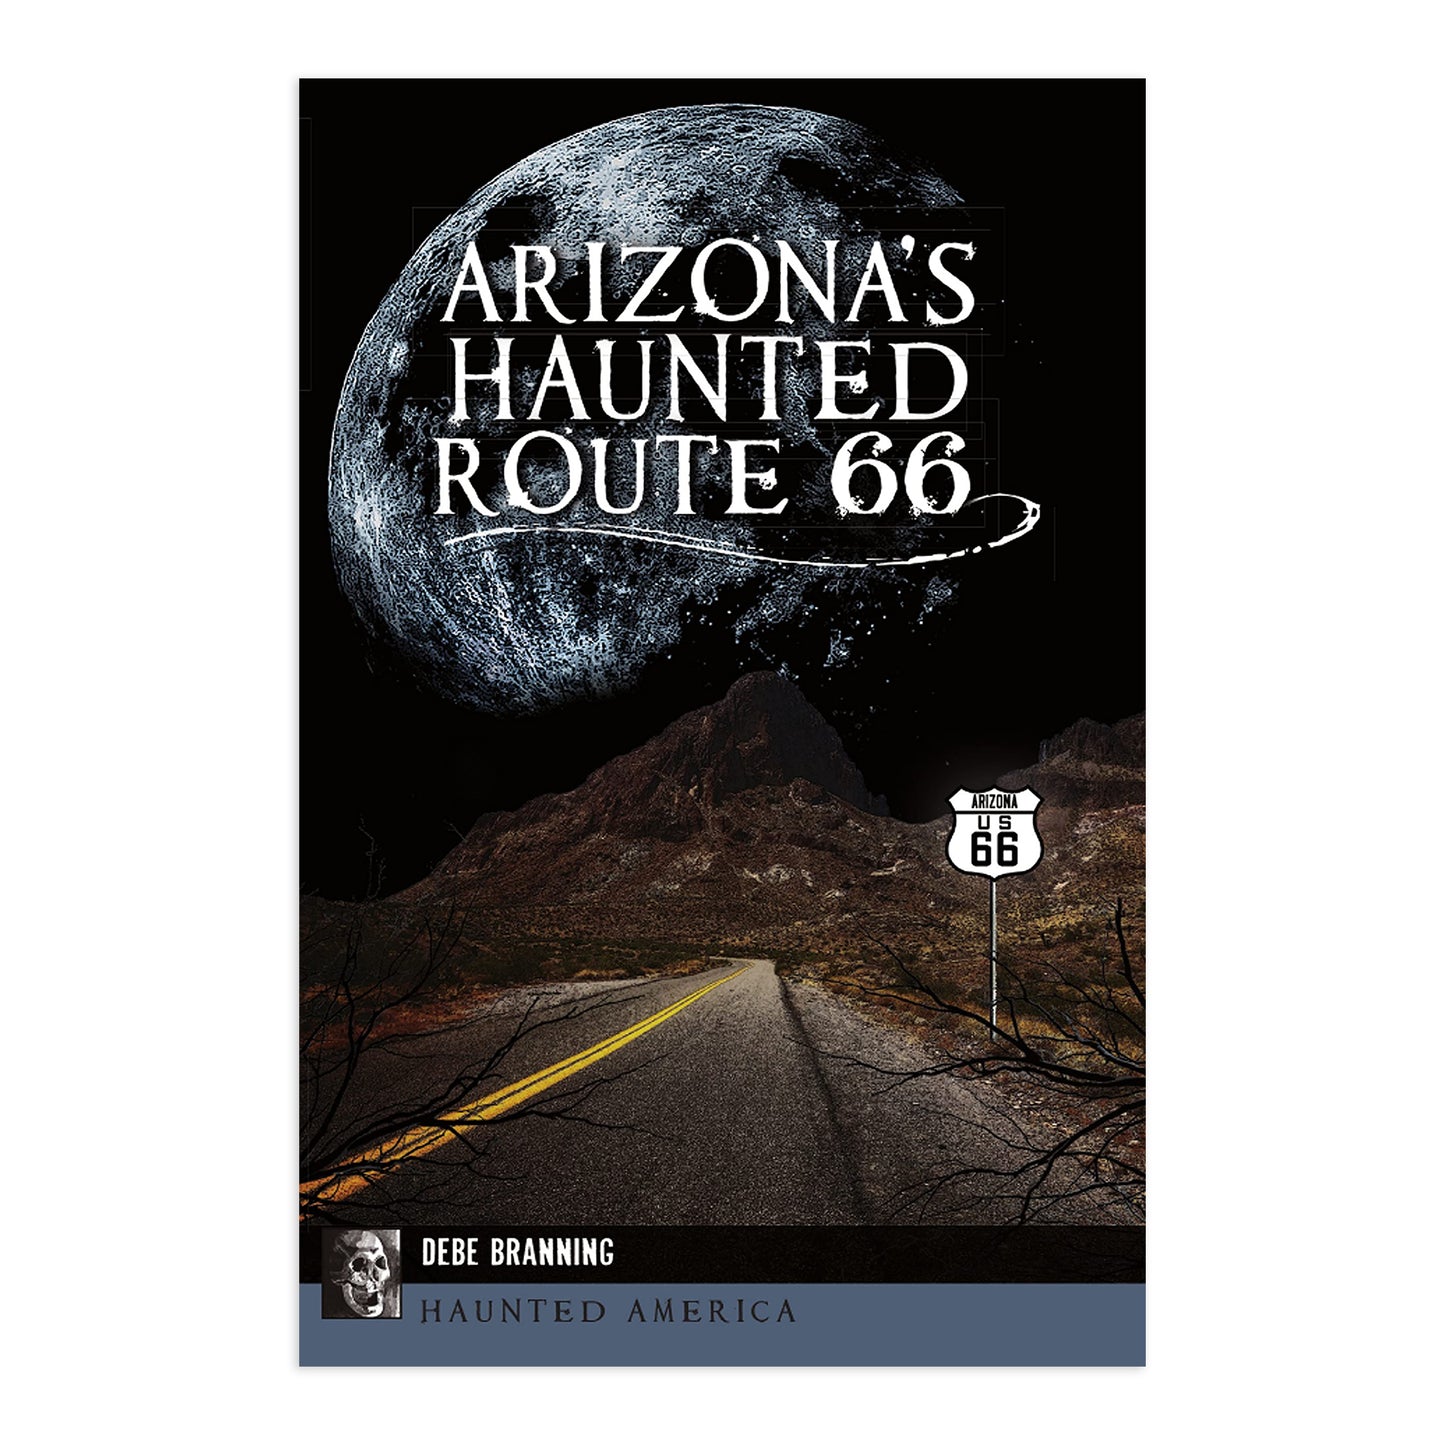 Arizona's Haunted Route 66